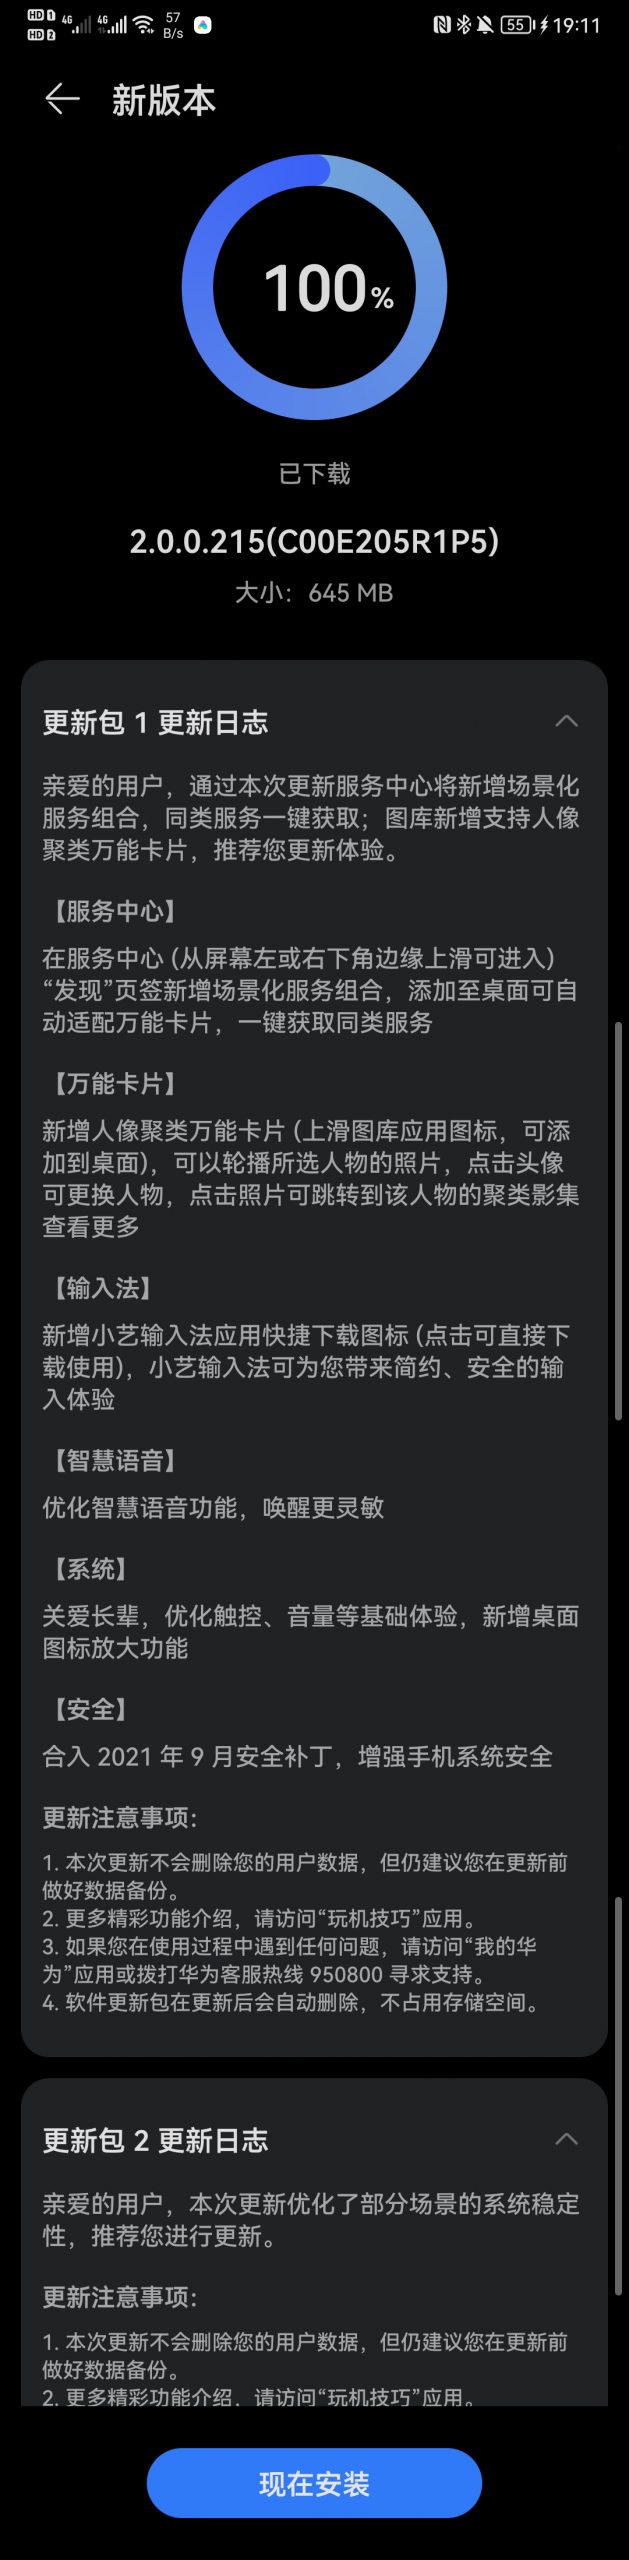 Huawei P20 HarmonyOS 2.0.0.215 Update